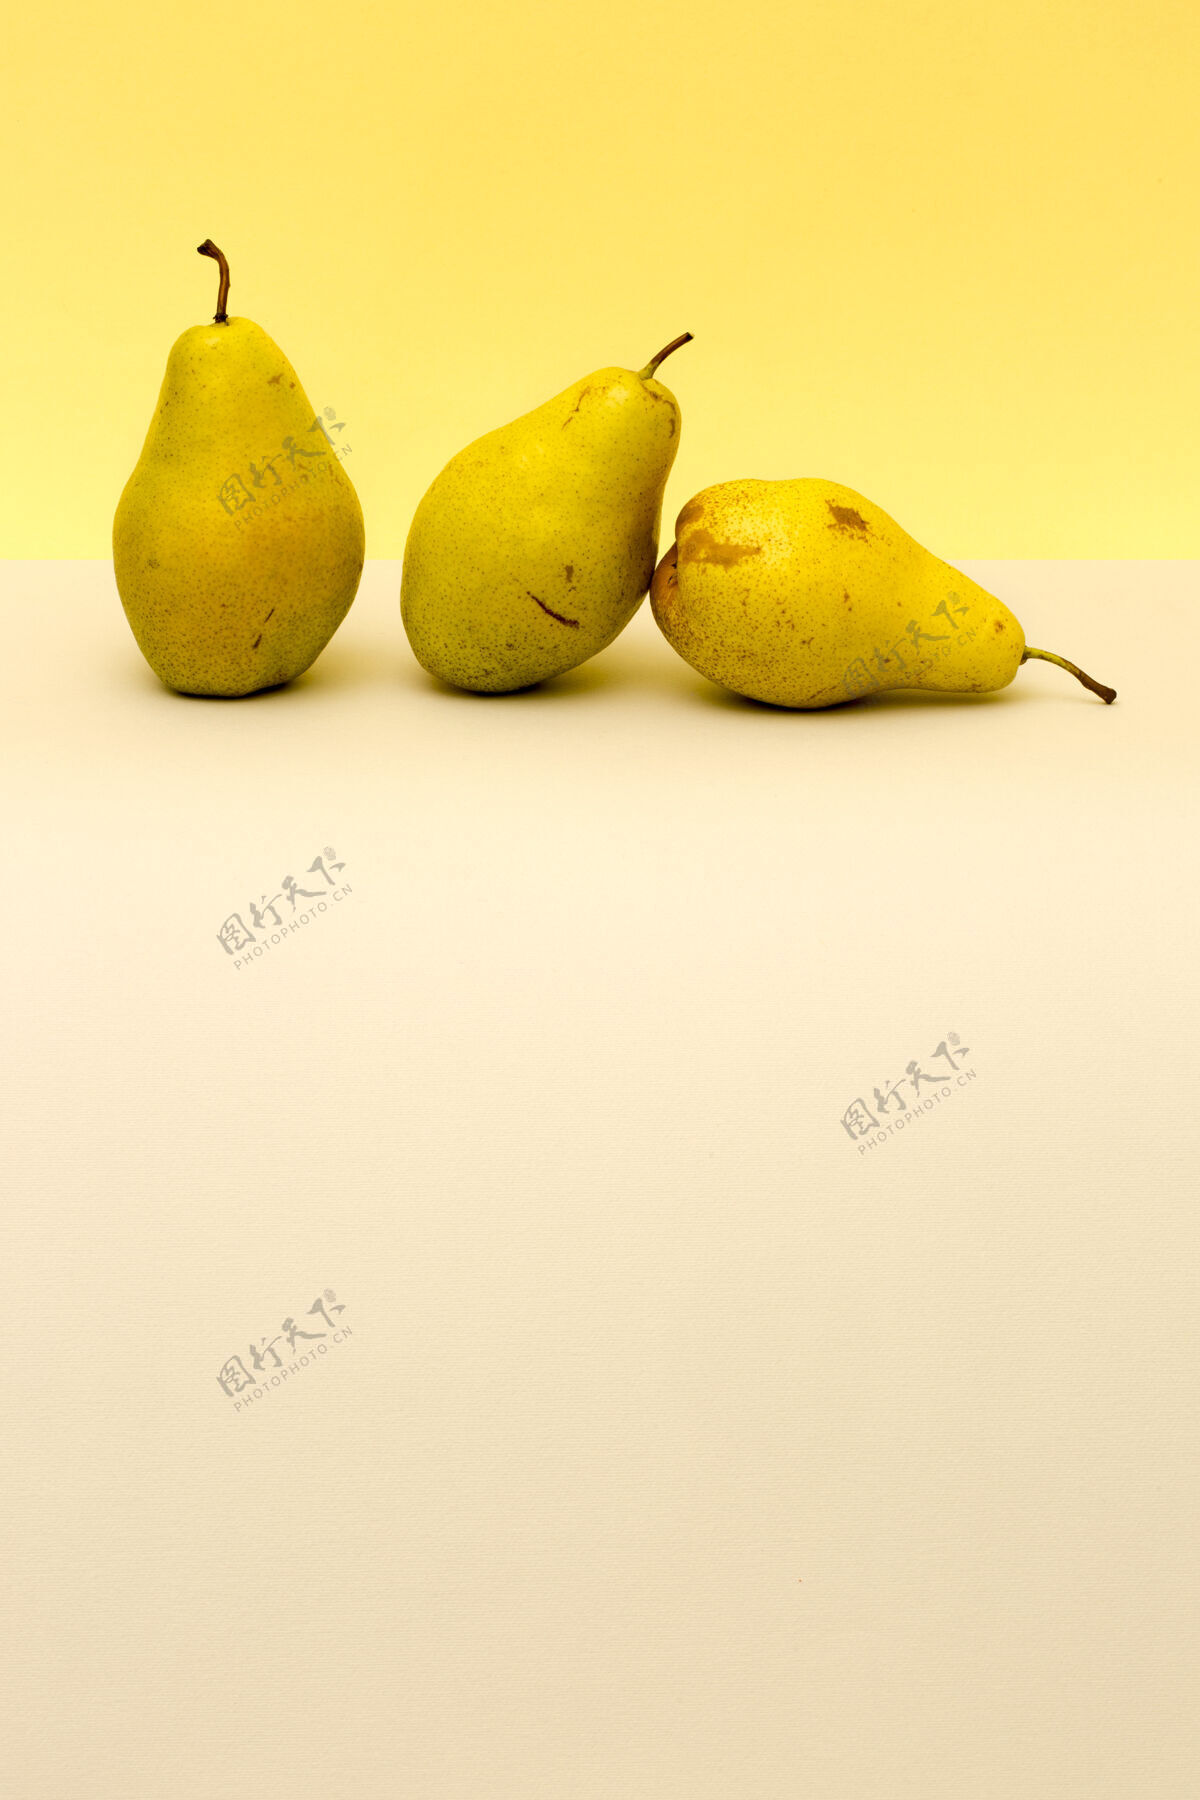 位置三个成熟的梨在彩色背景上组成作品最小